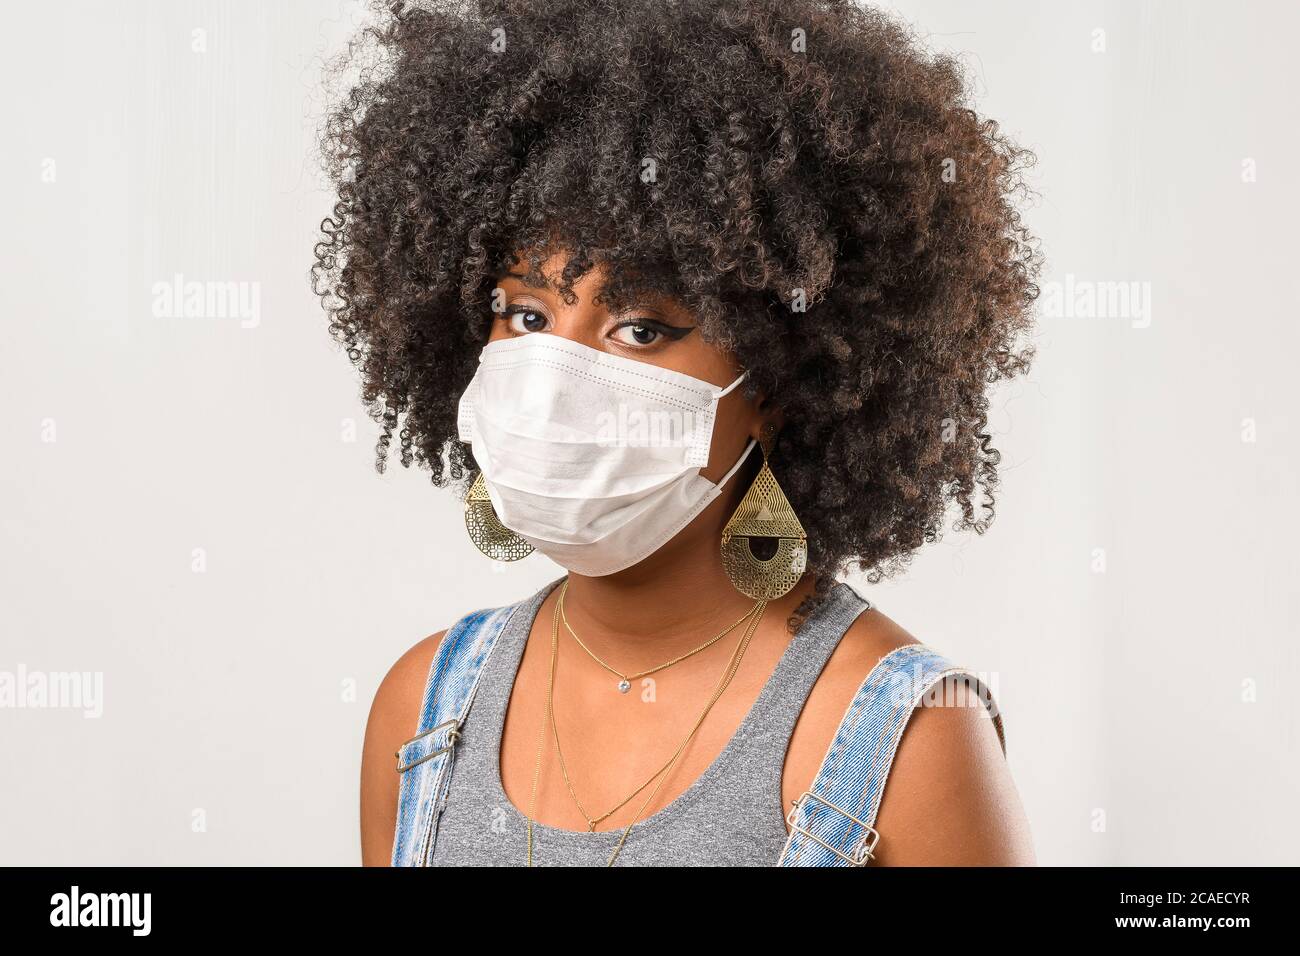 jeune fille portant un masque protecteur en cas de pandémie du virus corona, covid-19 Banque D'Images